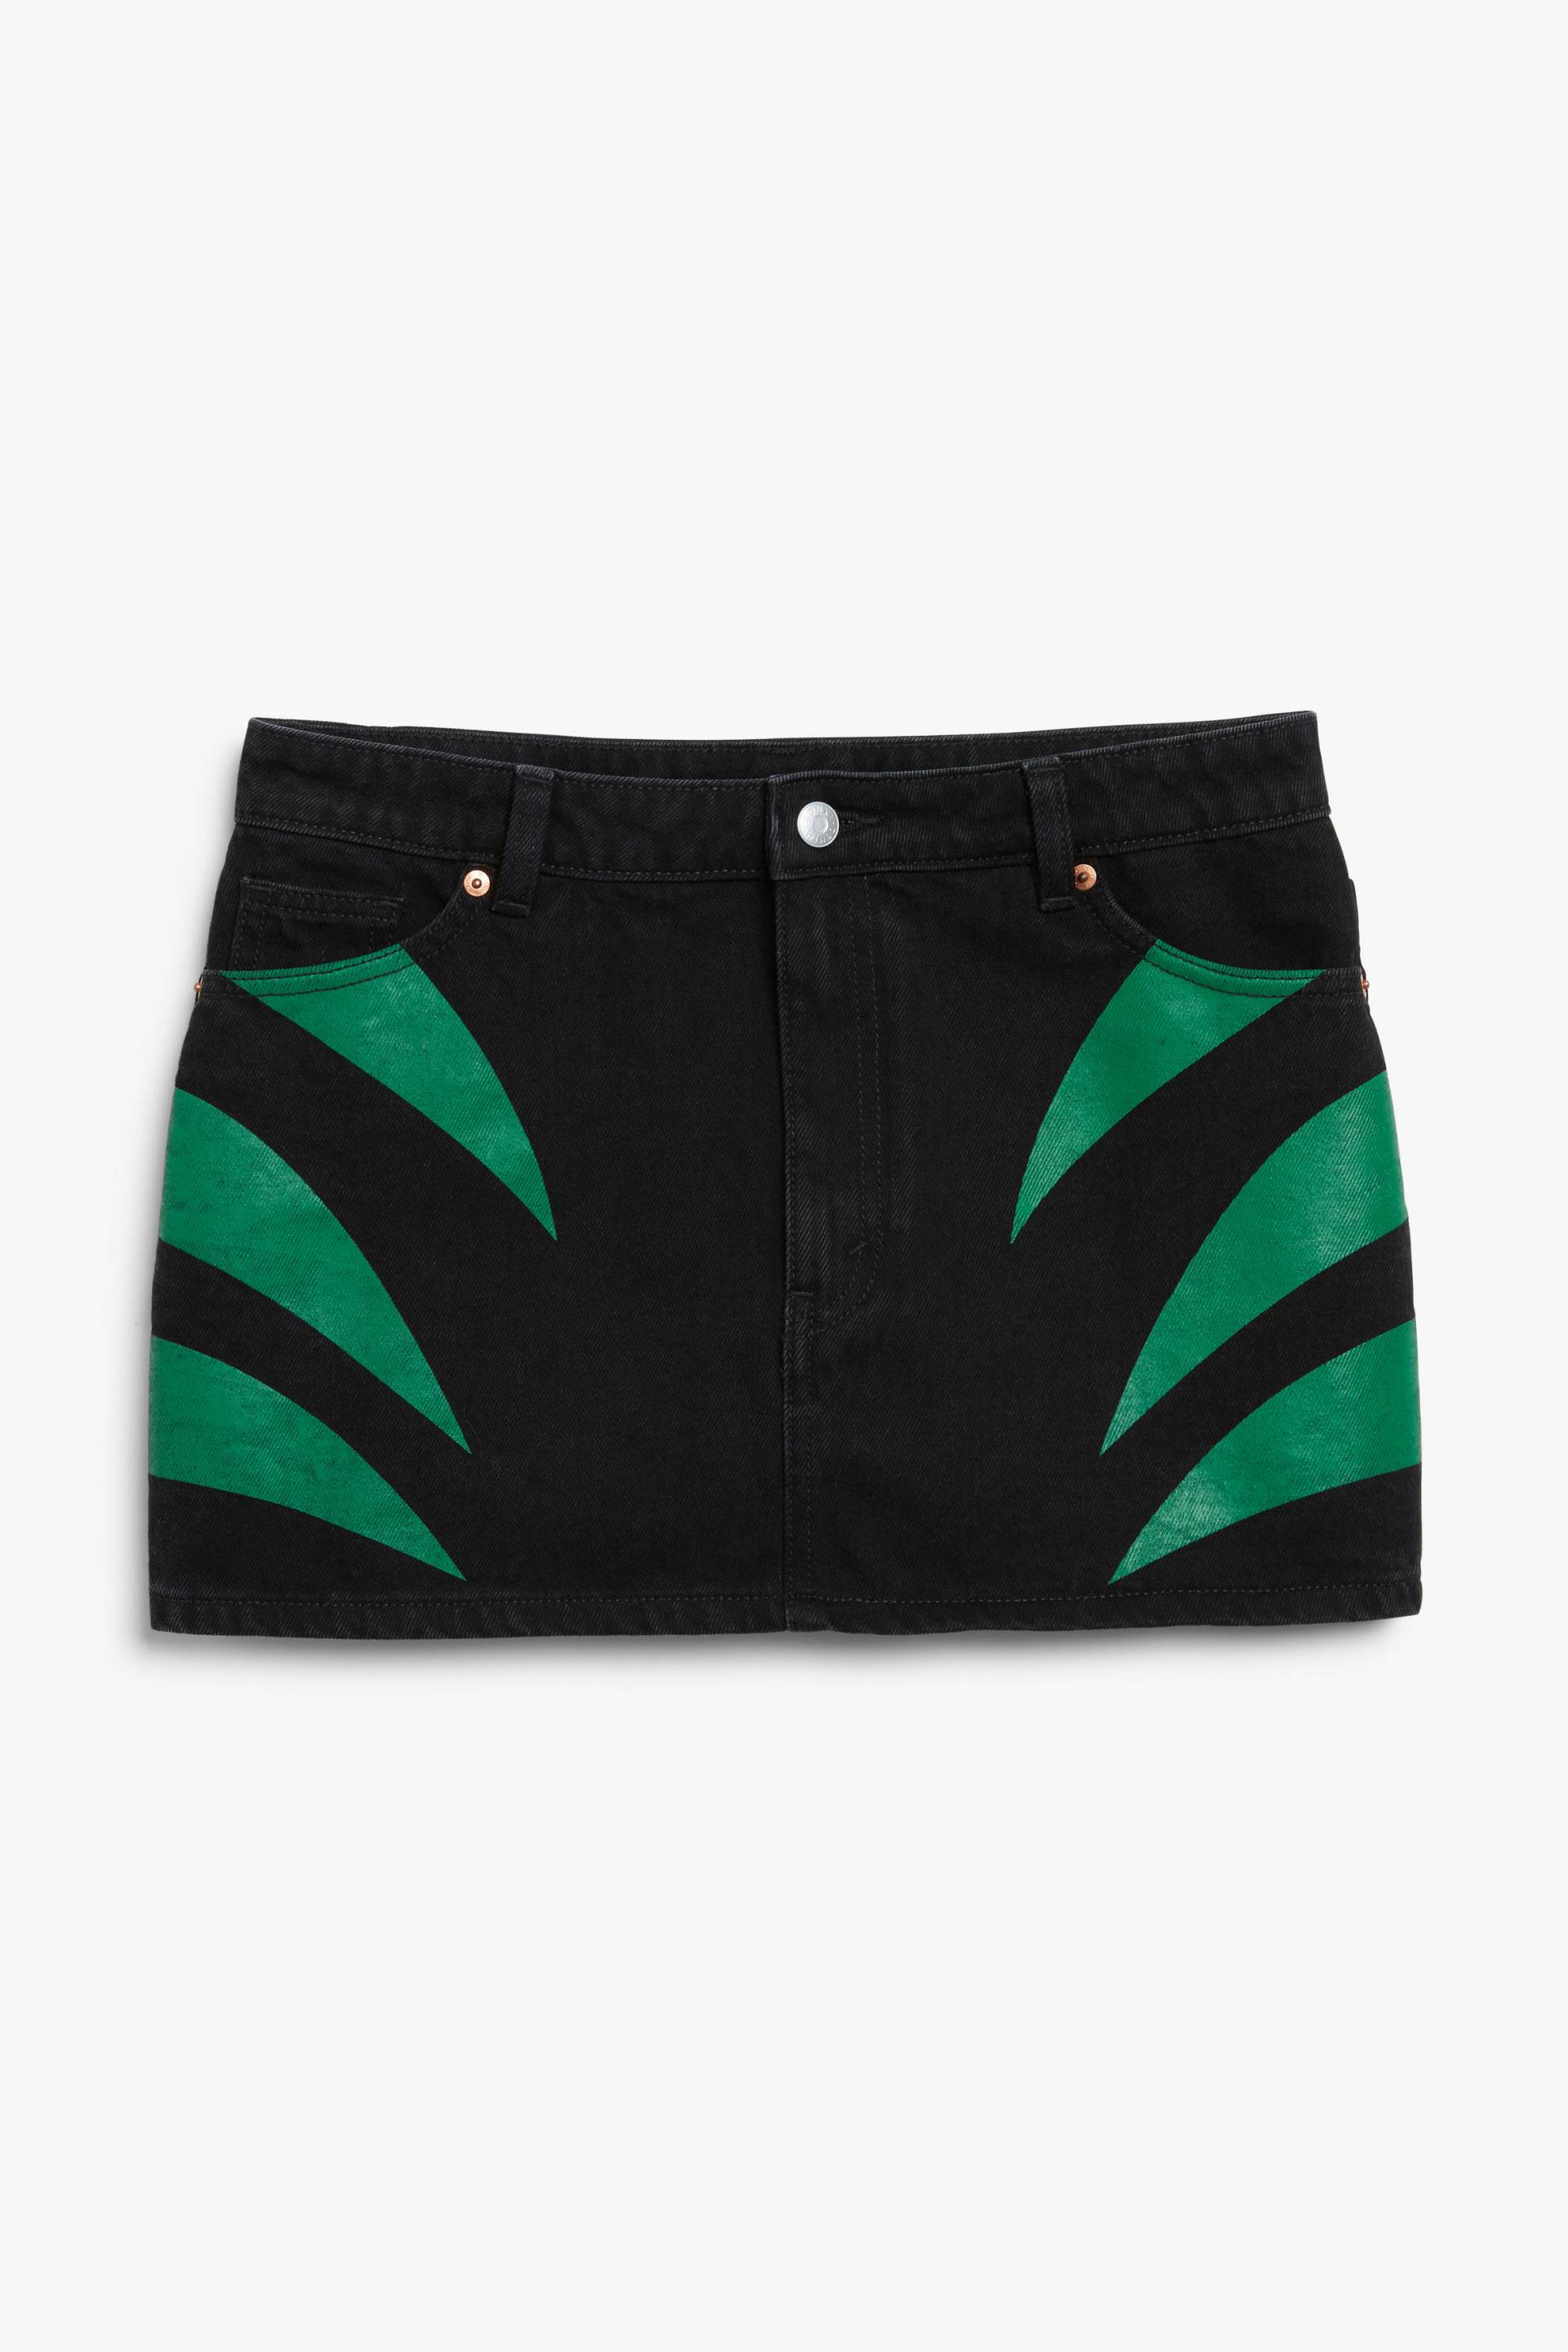 Monki × IGGY JEANS Minirock aus Denim Grüne Stacheln, Röcke in Größe 38. Farbe: Green spikes von Monki